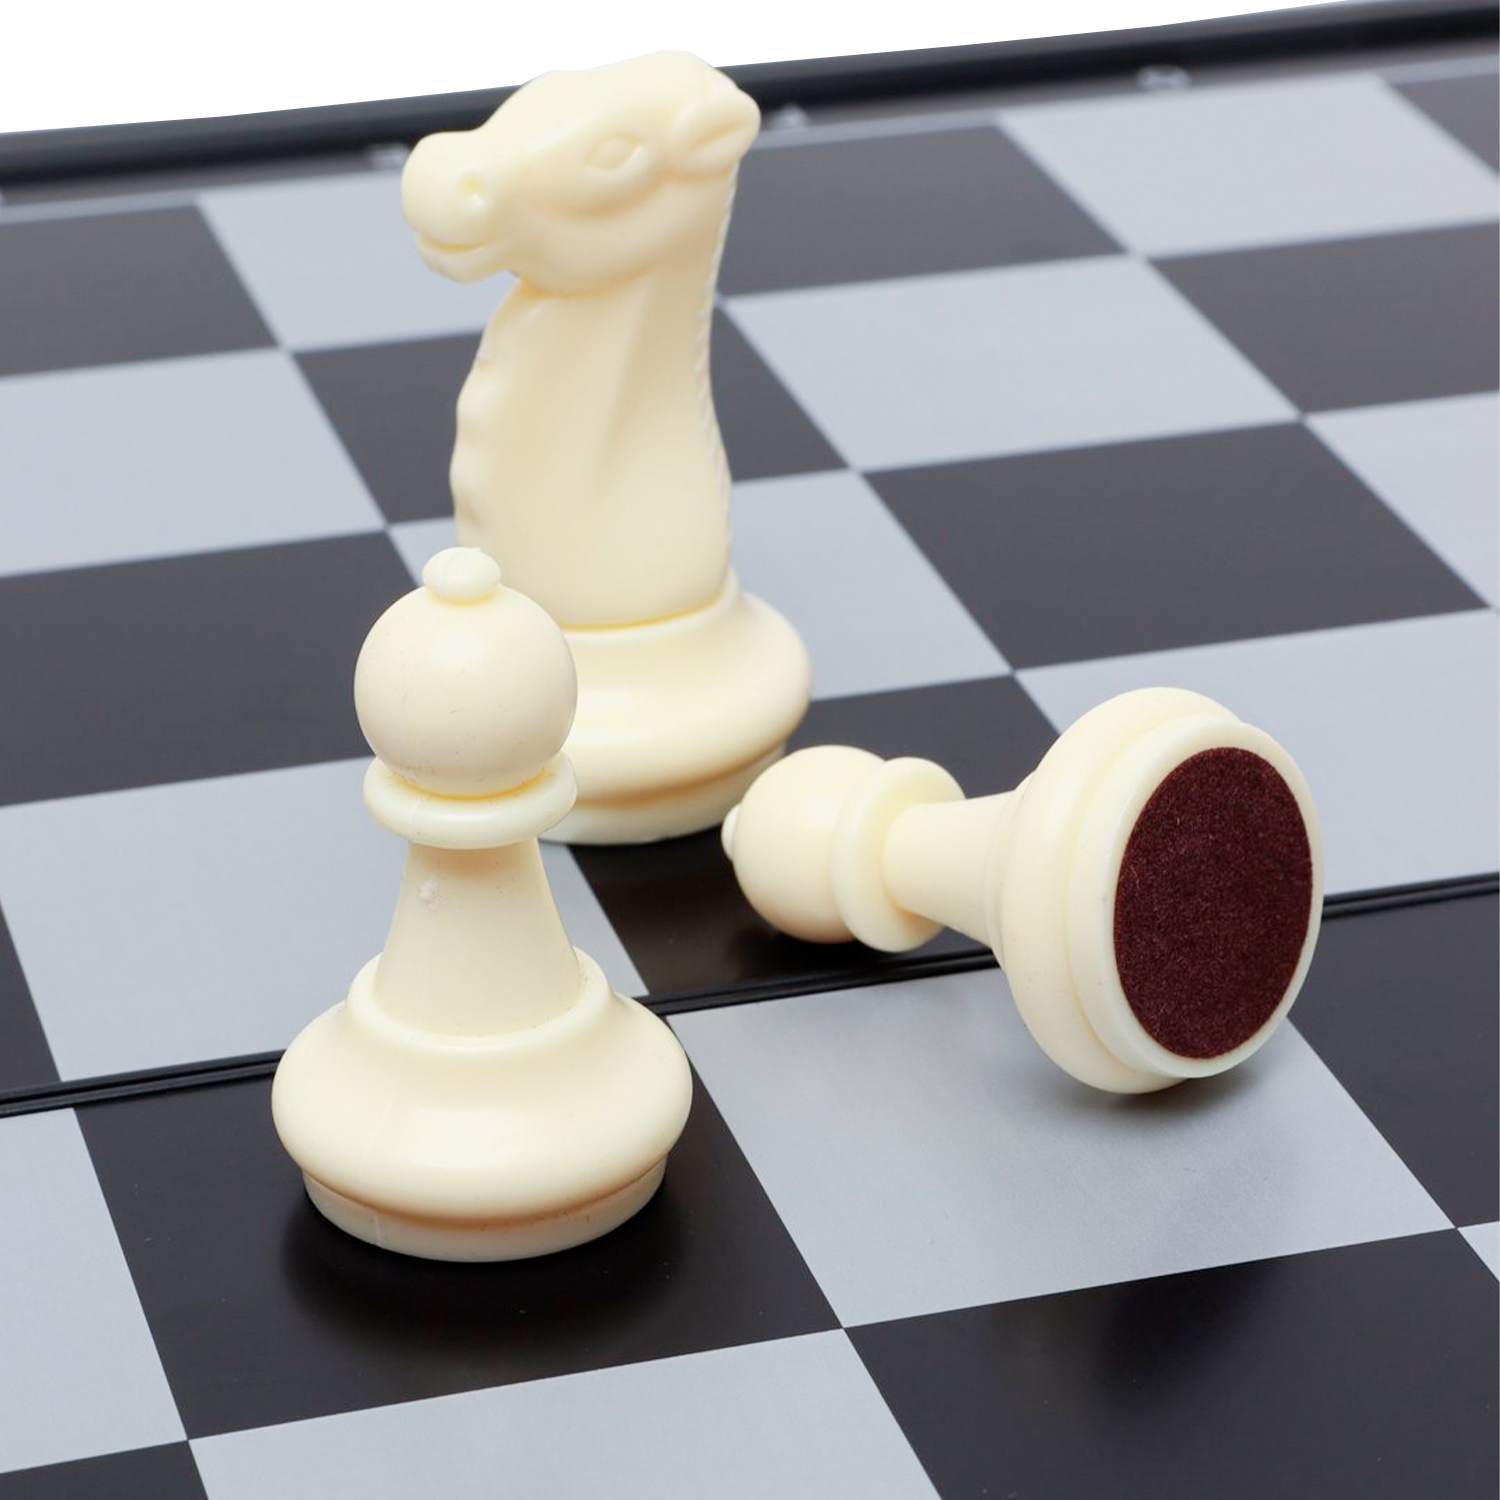 Магнитные шахматы QX 5977 "36х36 см"